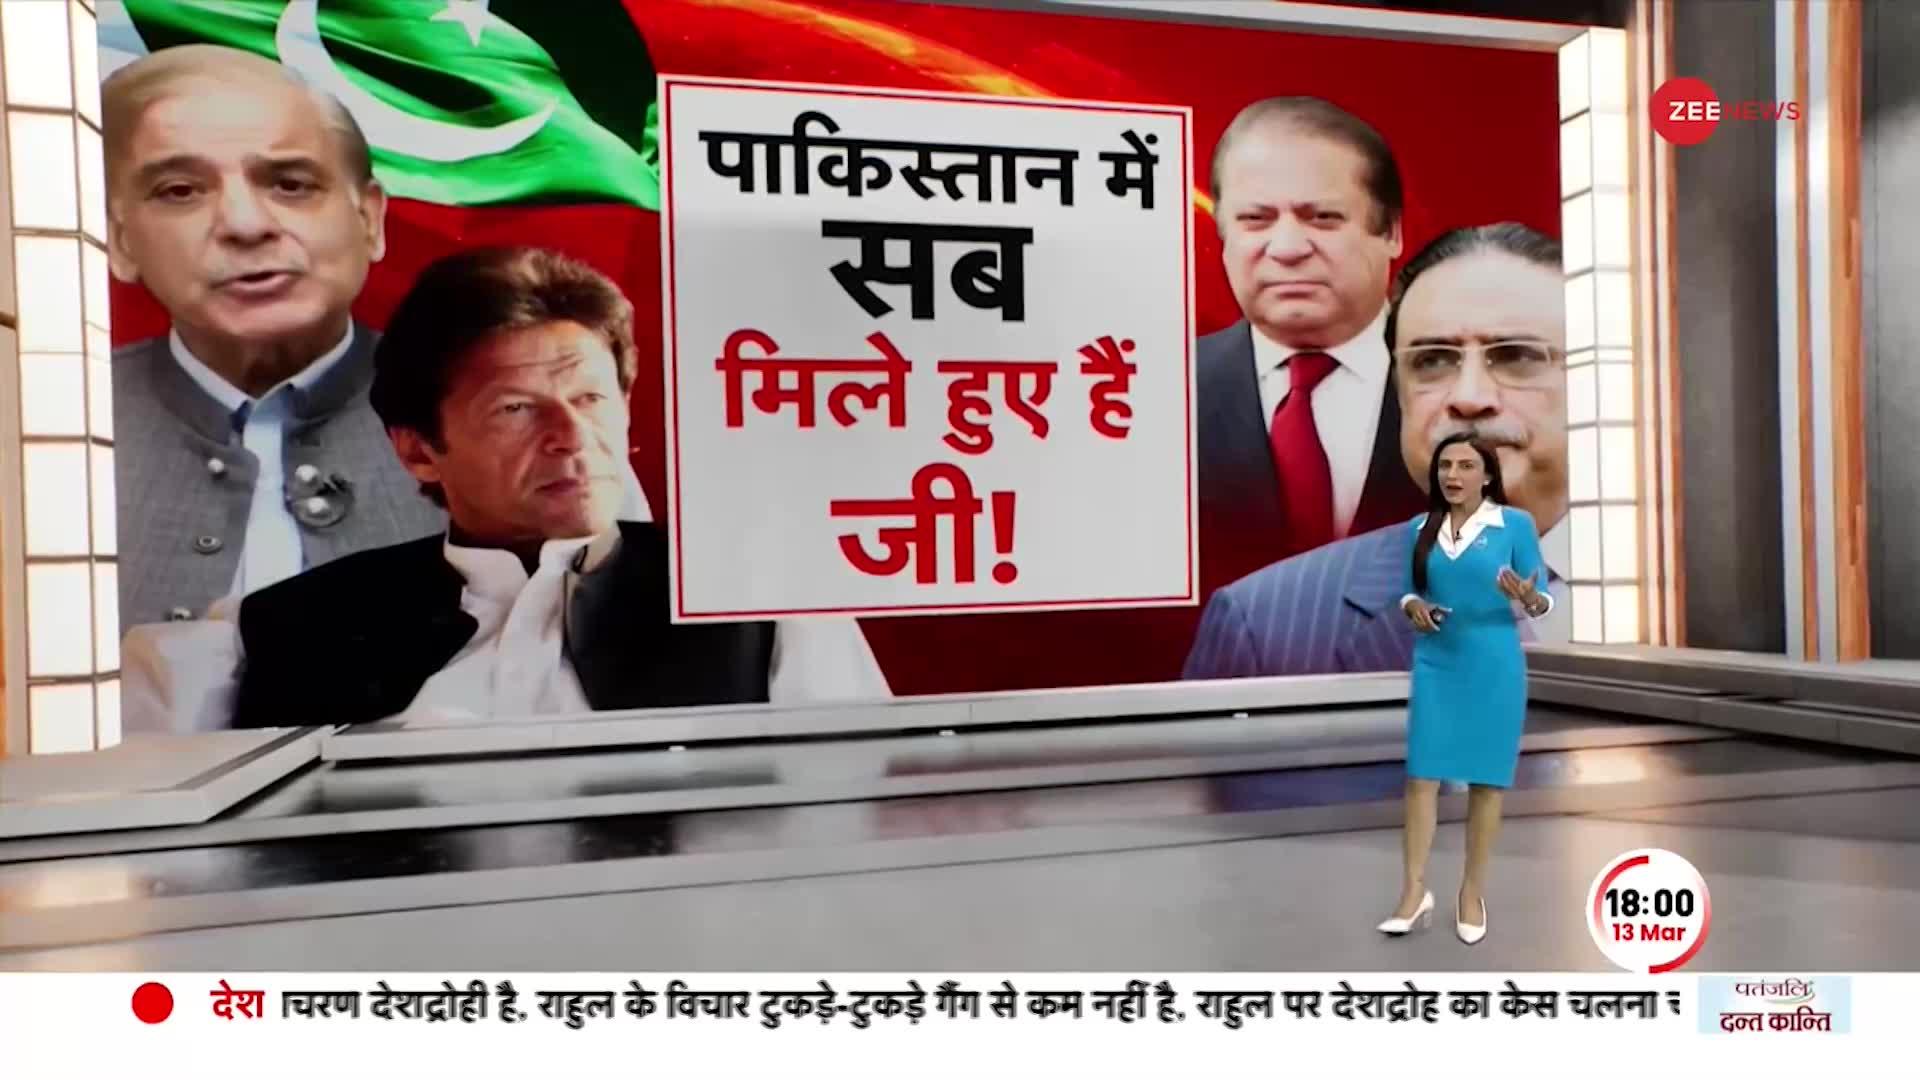 Deshhit: पाकिस्तान के प्रधानमंत्रियों ने करोड़ों का तोहफा....कौड़ियों के भाव लूटा !